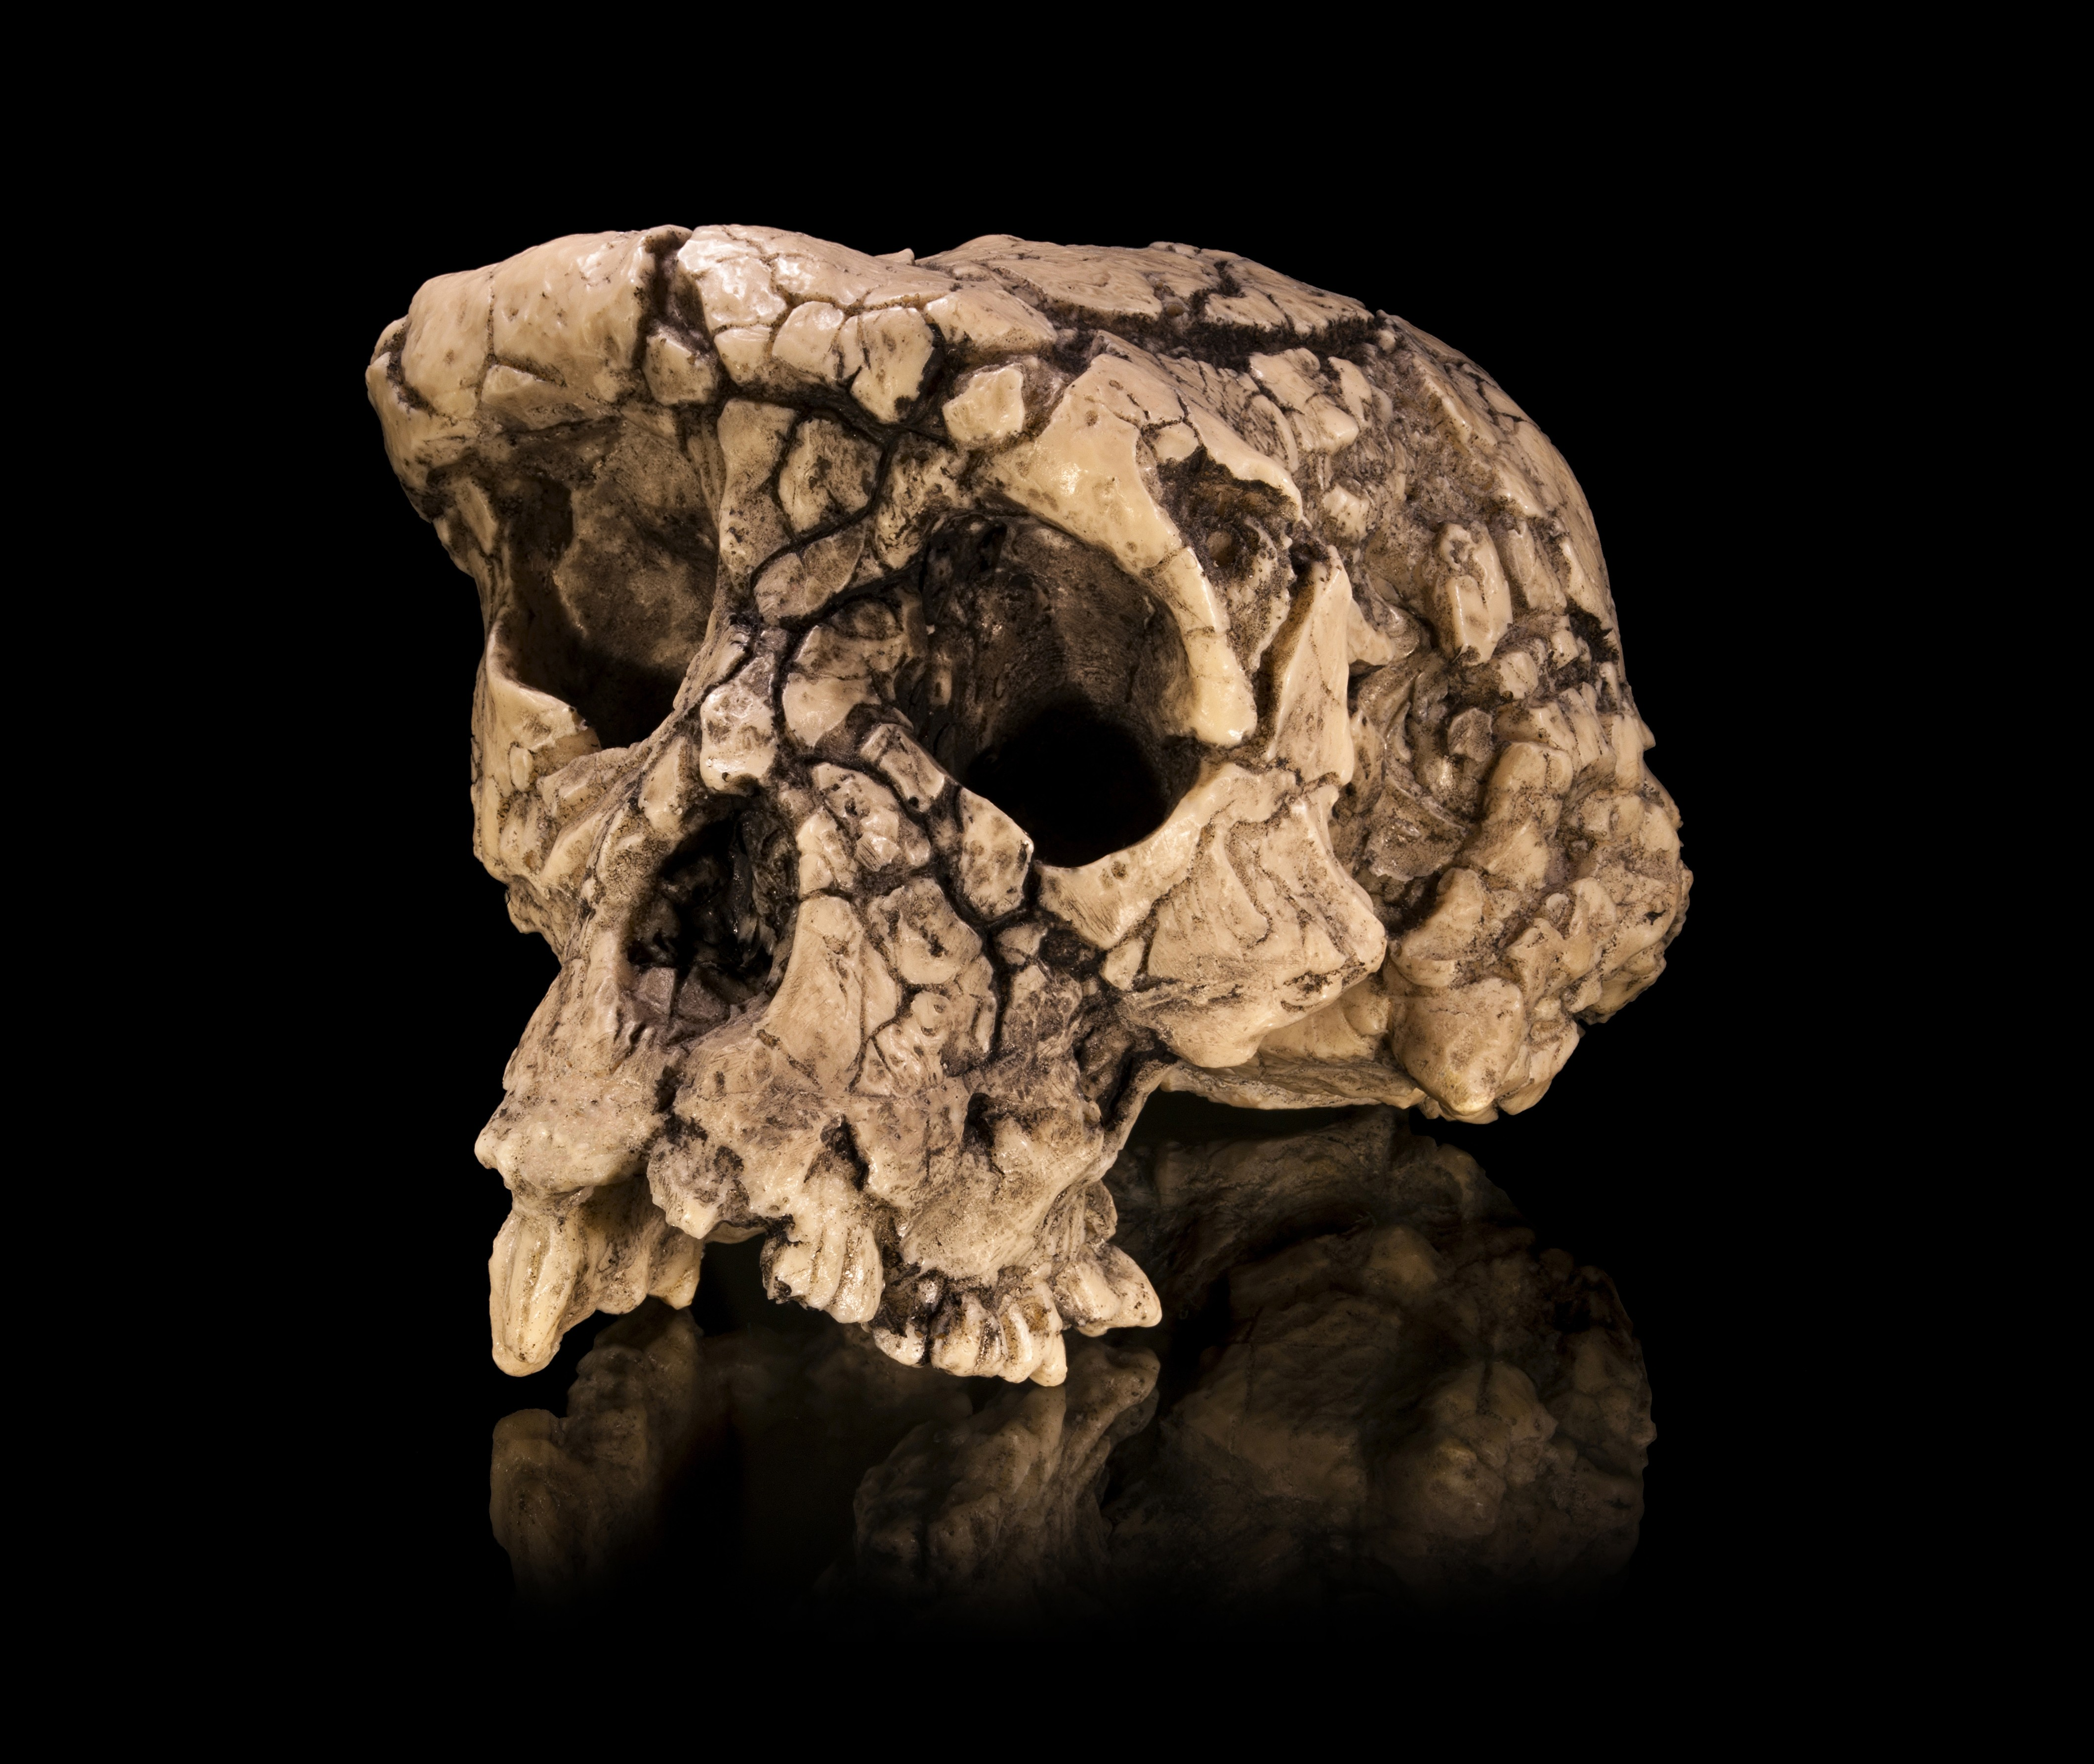 Σημαντικότεροι προ-αυστραλοπίθηκοι: Α) Σαχελάνθρωπος του Τσαντ (7,0 έως 6,0 εχπ) Το αρχαιότερο και πιο εντυπωσιακό δείγμα αποτελείται από ένα κρανίο που βρέθηκε στη Θέση Τόρος-Μενάλια στο Τσαντ της